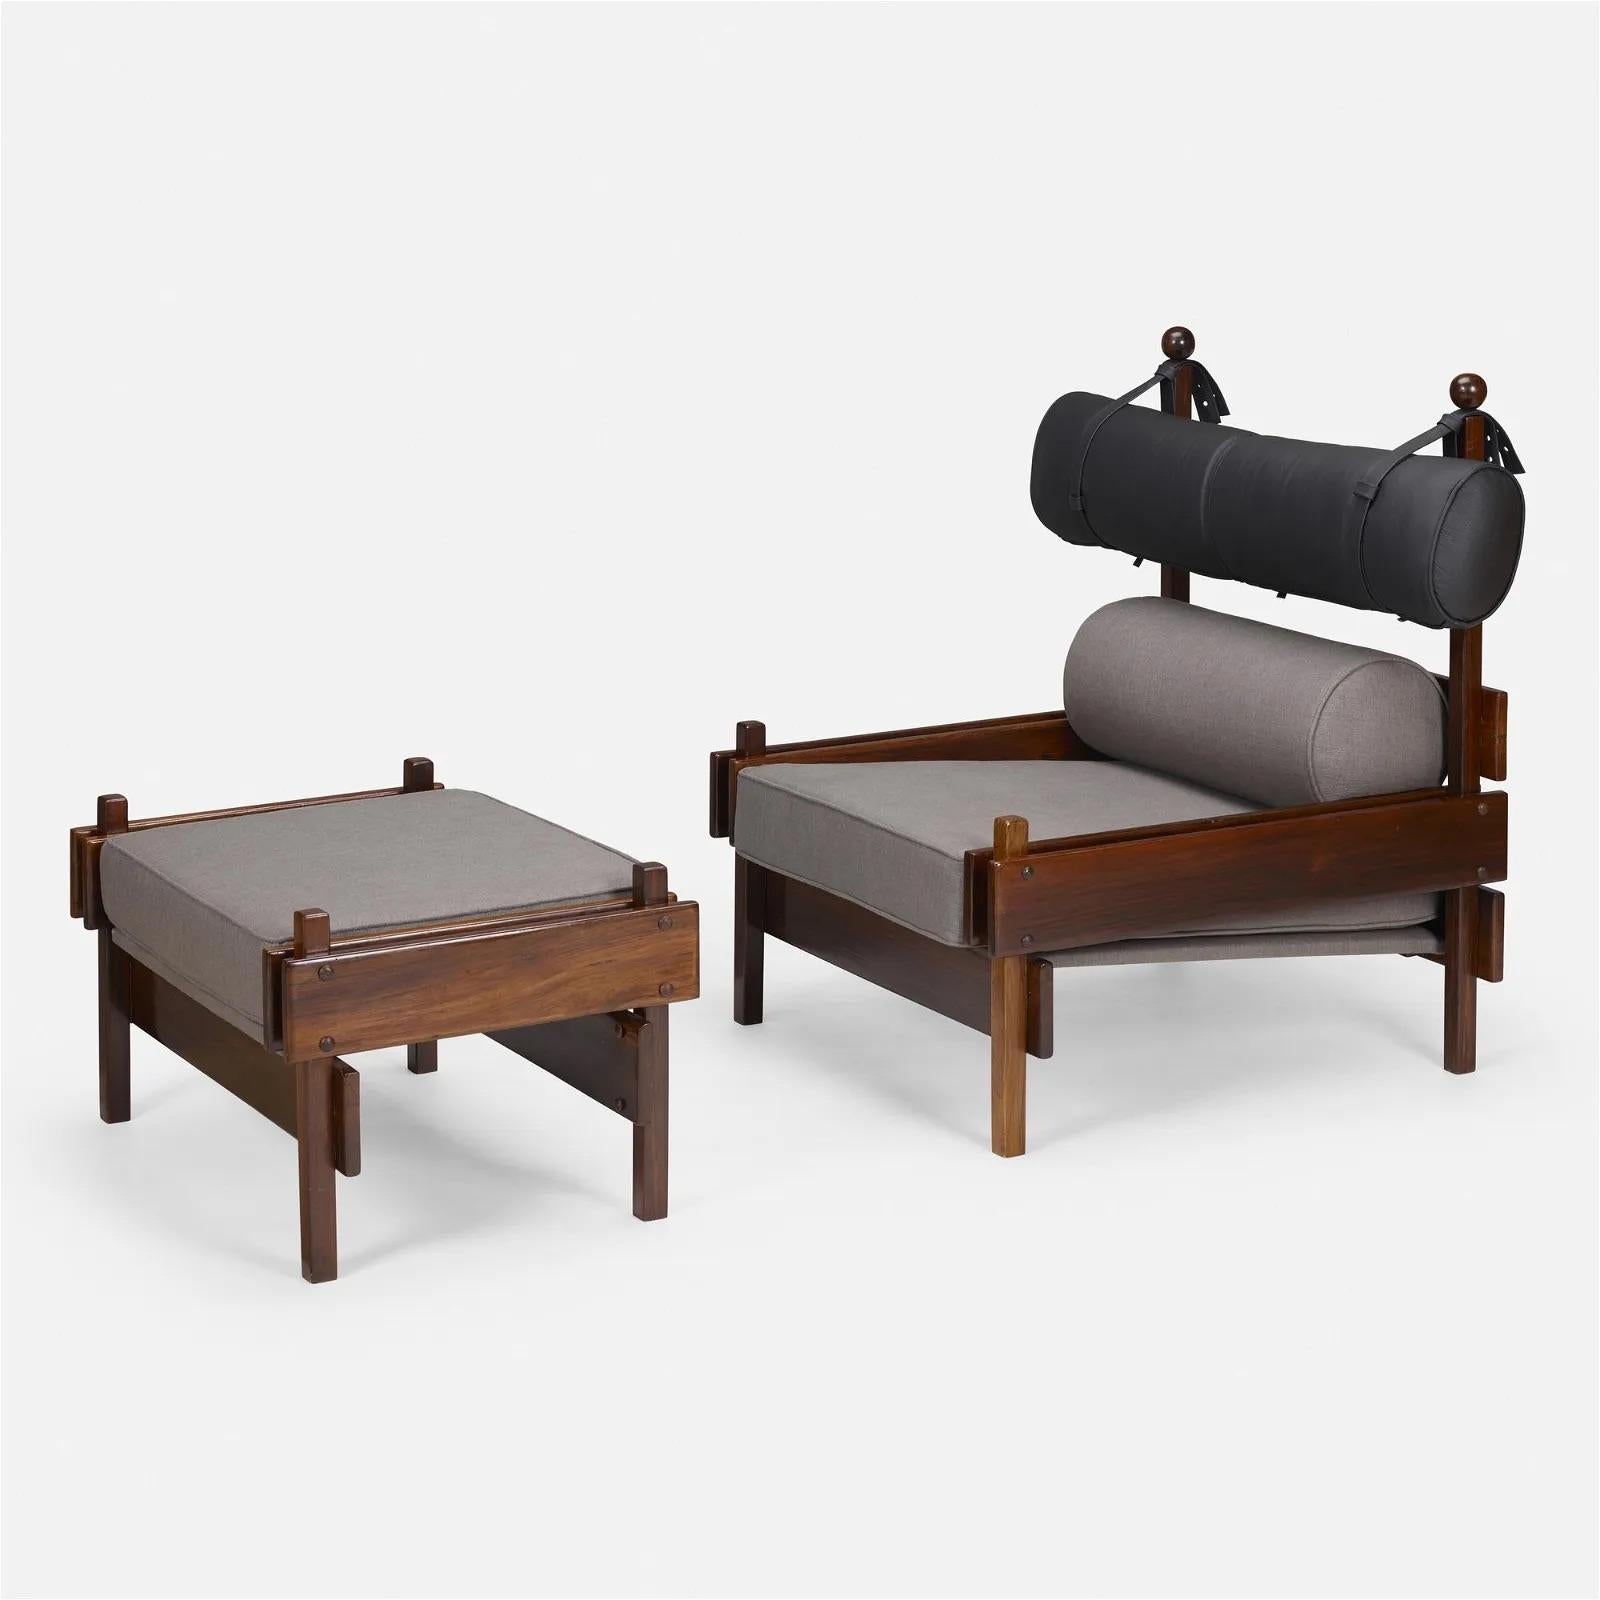 Superbe paire de chaises longues Tonico conçues par Sergio Rodrigues, avec ottomans assortis. Fabriqués par Oca pour Meia Pataca au Brésil, ces chaises et poufs sont en bois de rose Jacaranda massif et comportent un coussin d'assise et de dossier